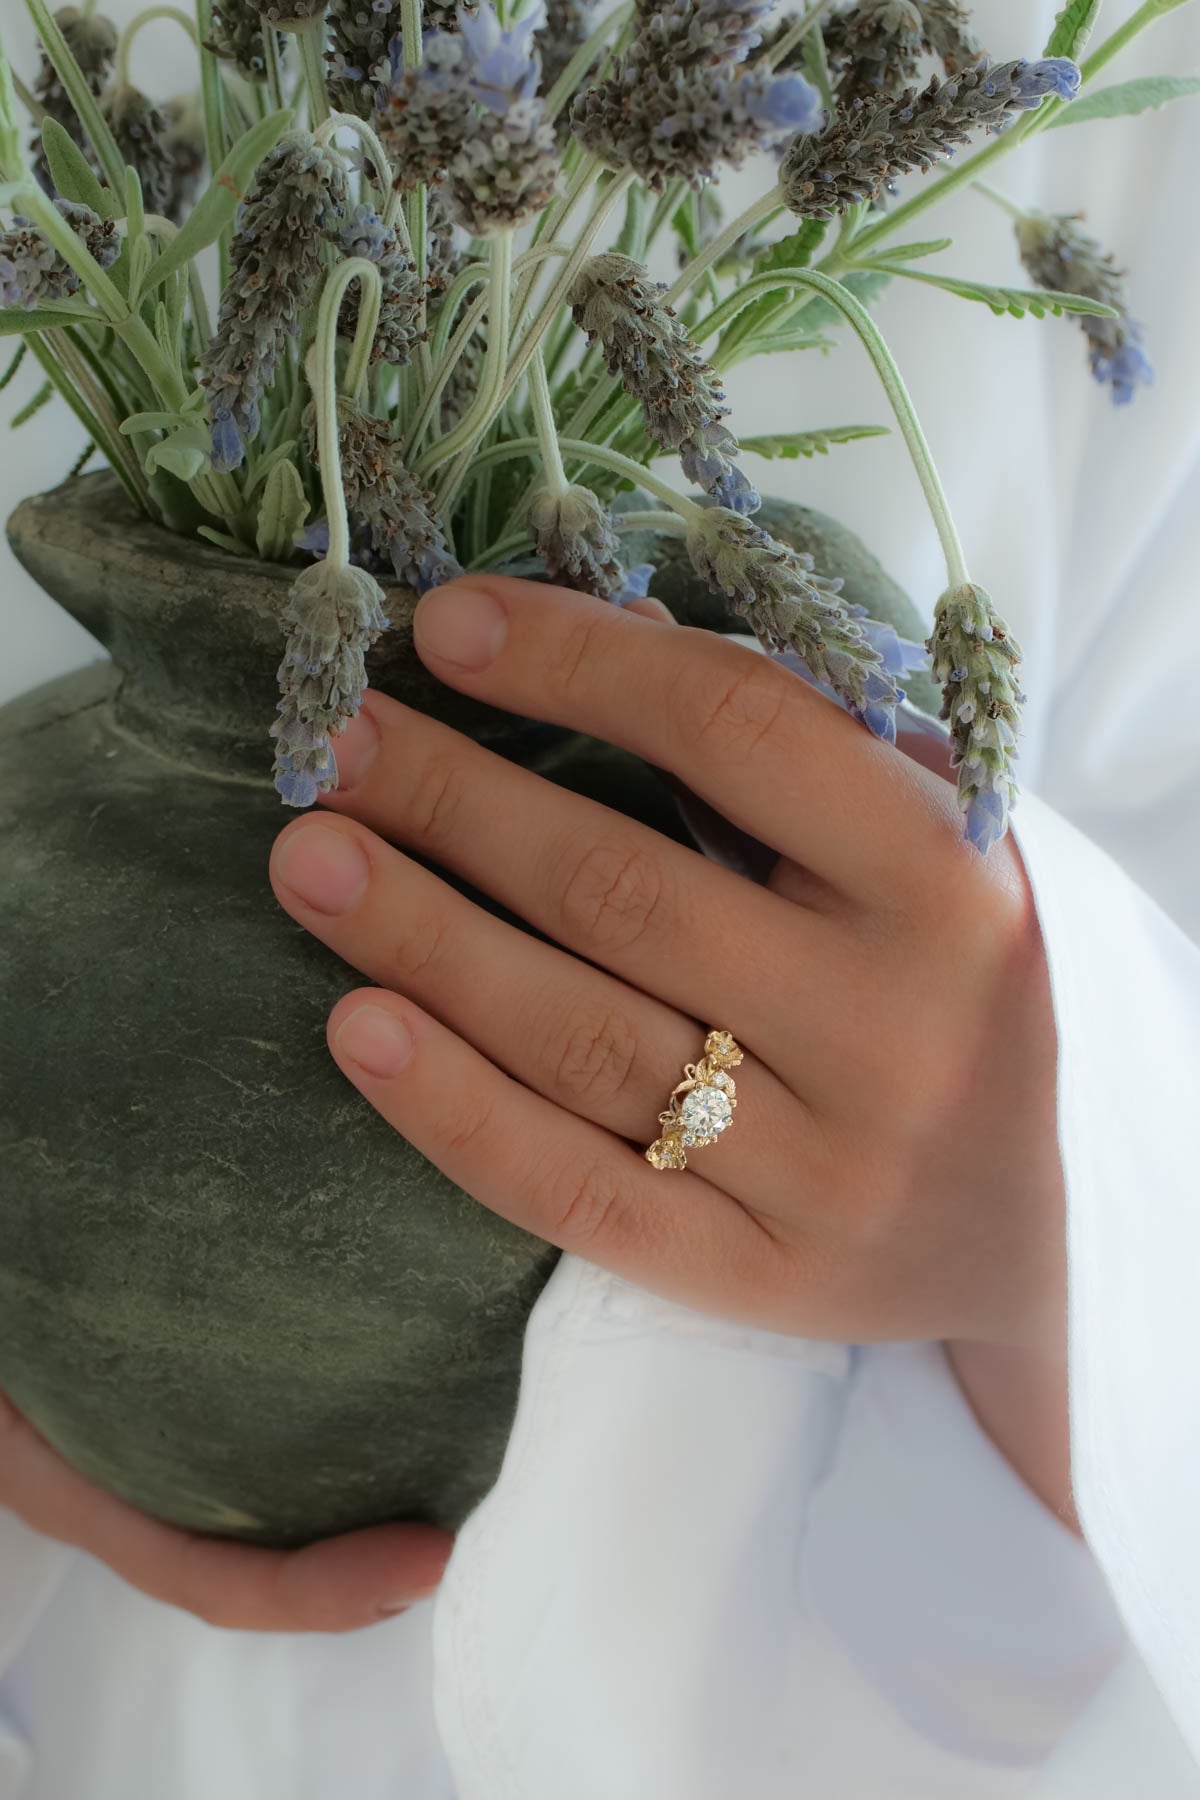 Rose gold moissanite ring for engagement / Adelina - Eden Garden Jewelry™